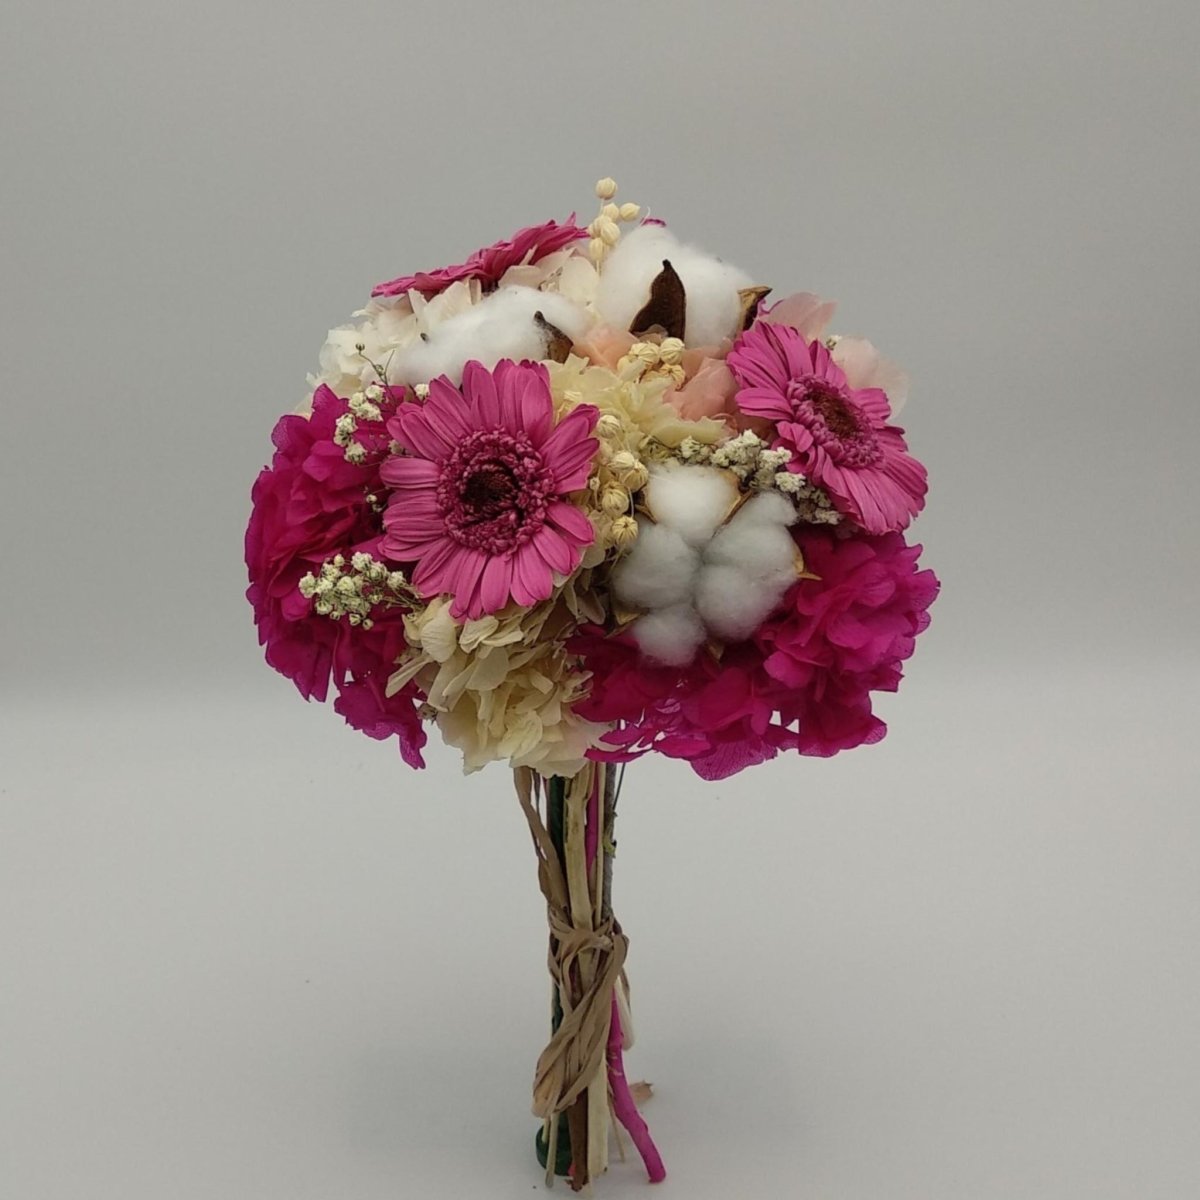 Bouquet con flores eternas mod.1 Floreate